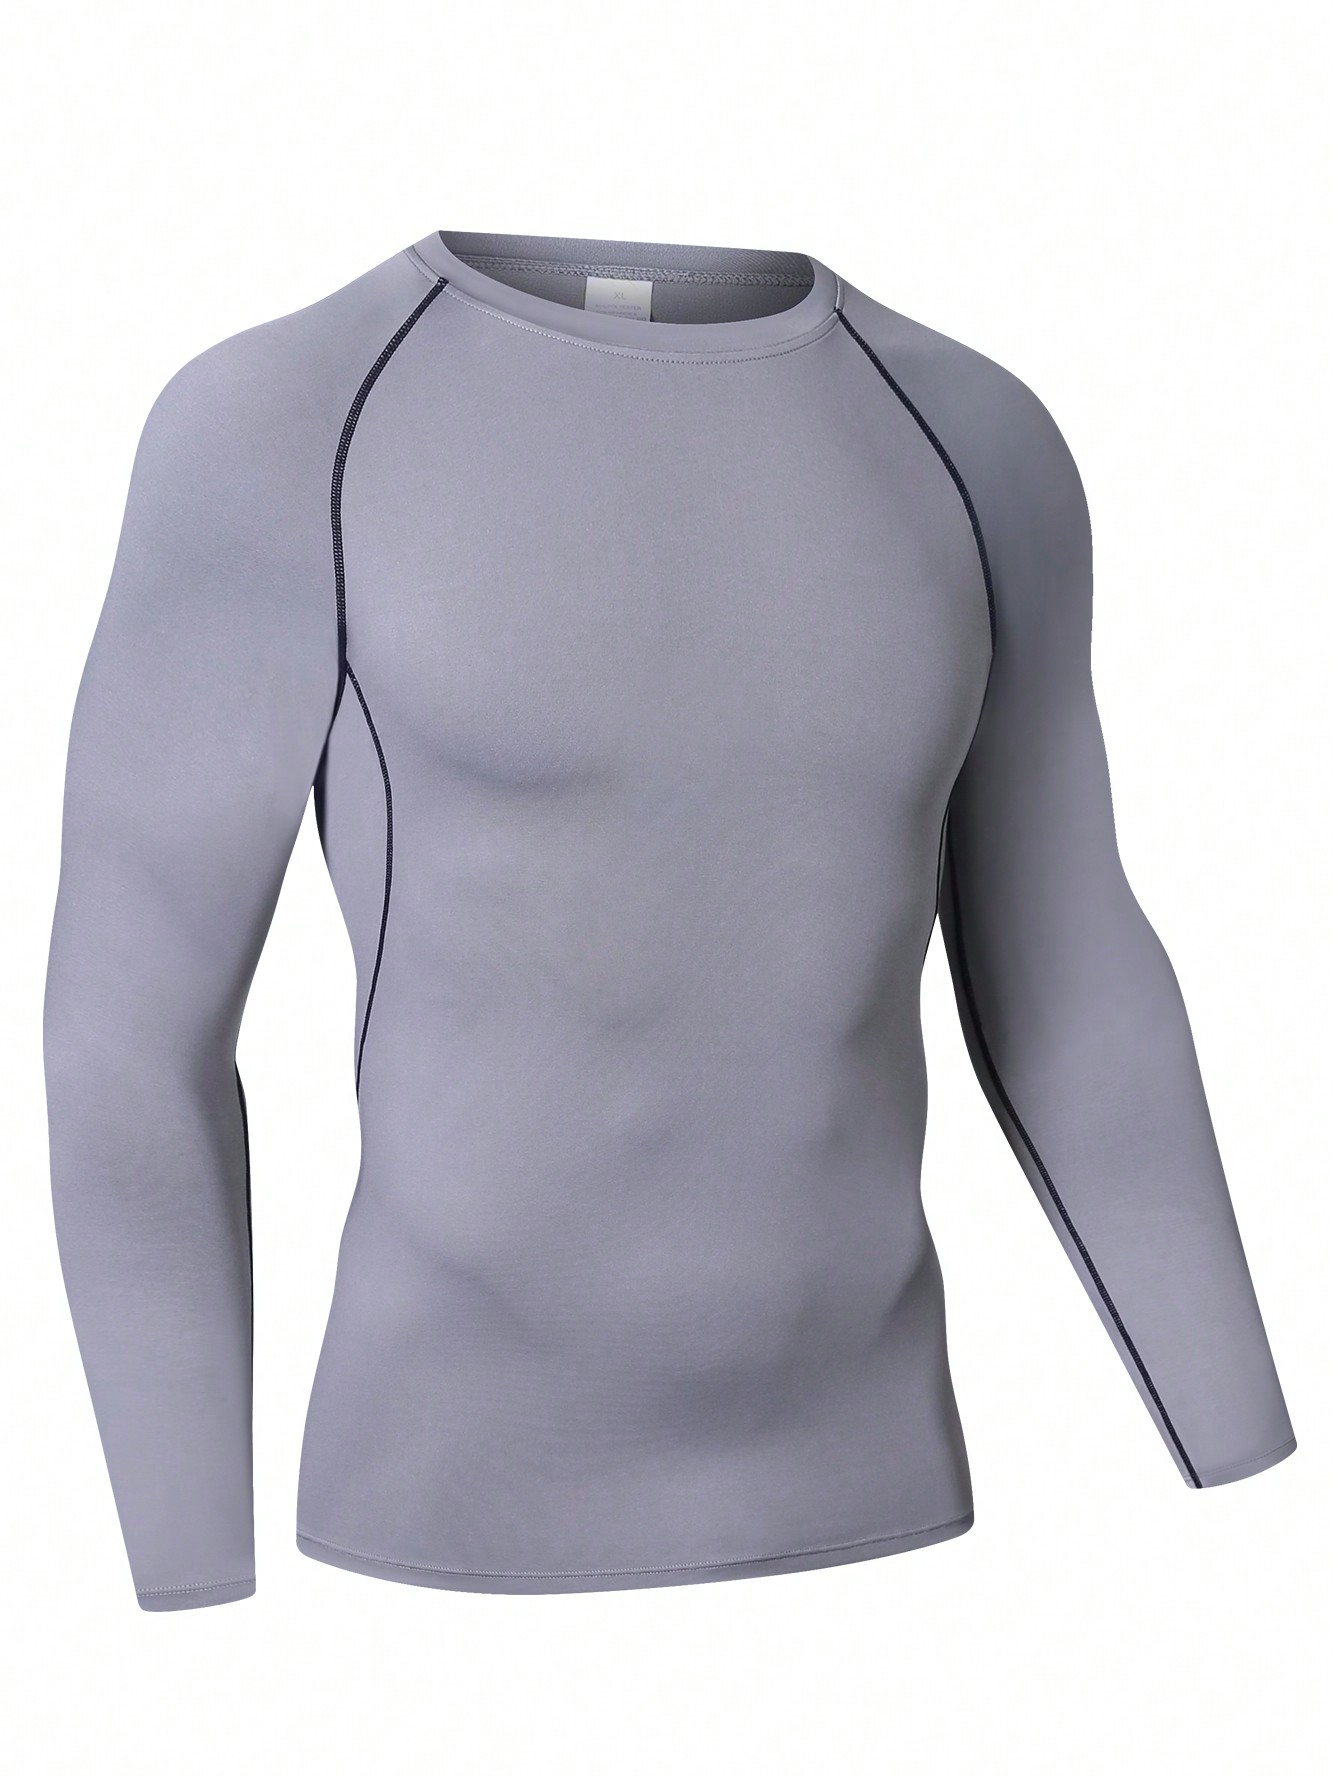 Мужская эластичная компрессионная рубашка для фитнеса с длинными рукавами, серый мужская футболка для спортзала футболка для фитнеса бодибилдинга тренировок мужская летняя спортивная футболка для бега мужская футбол